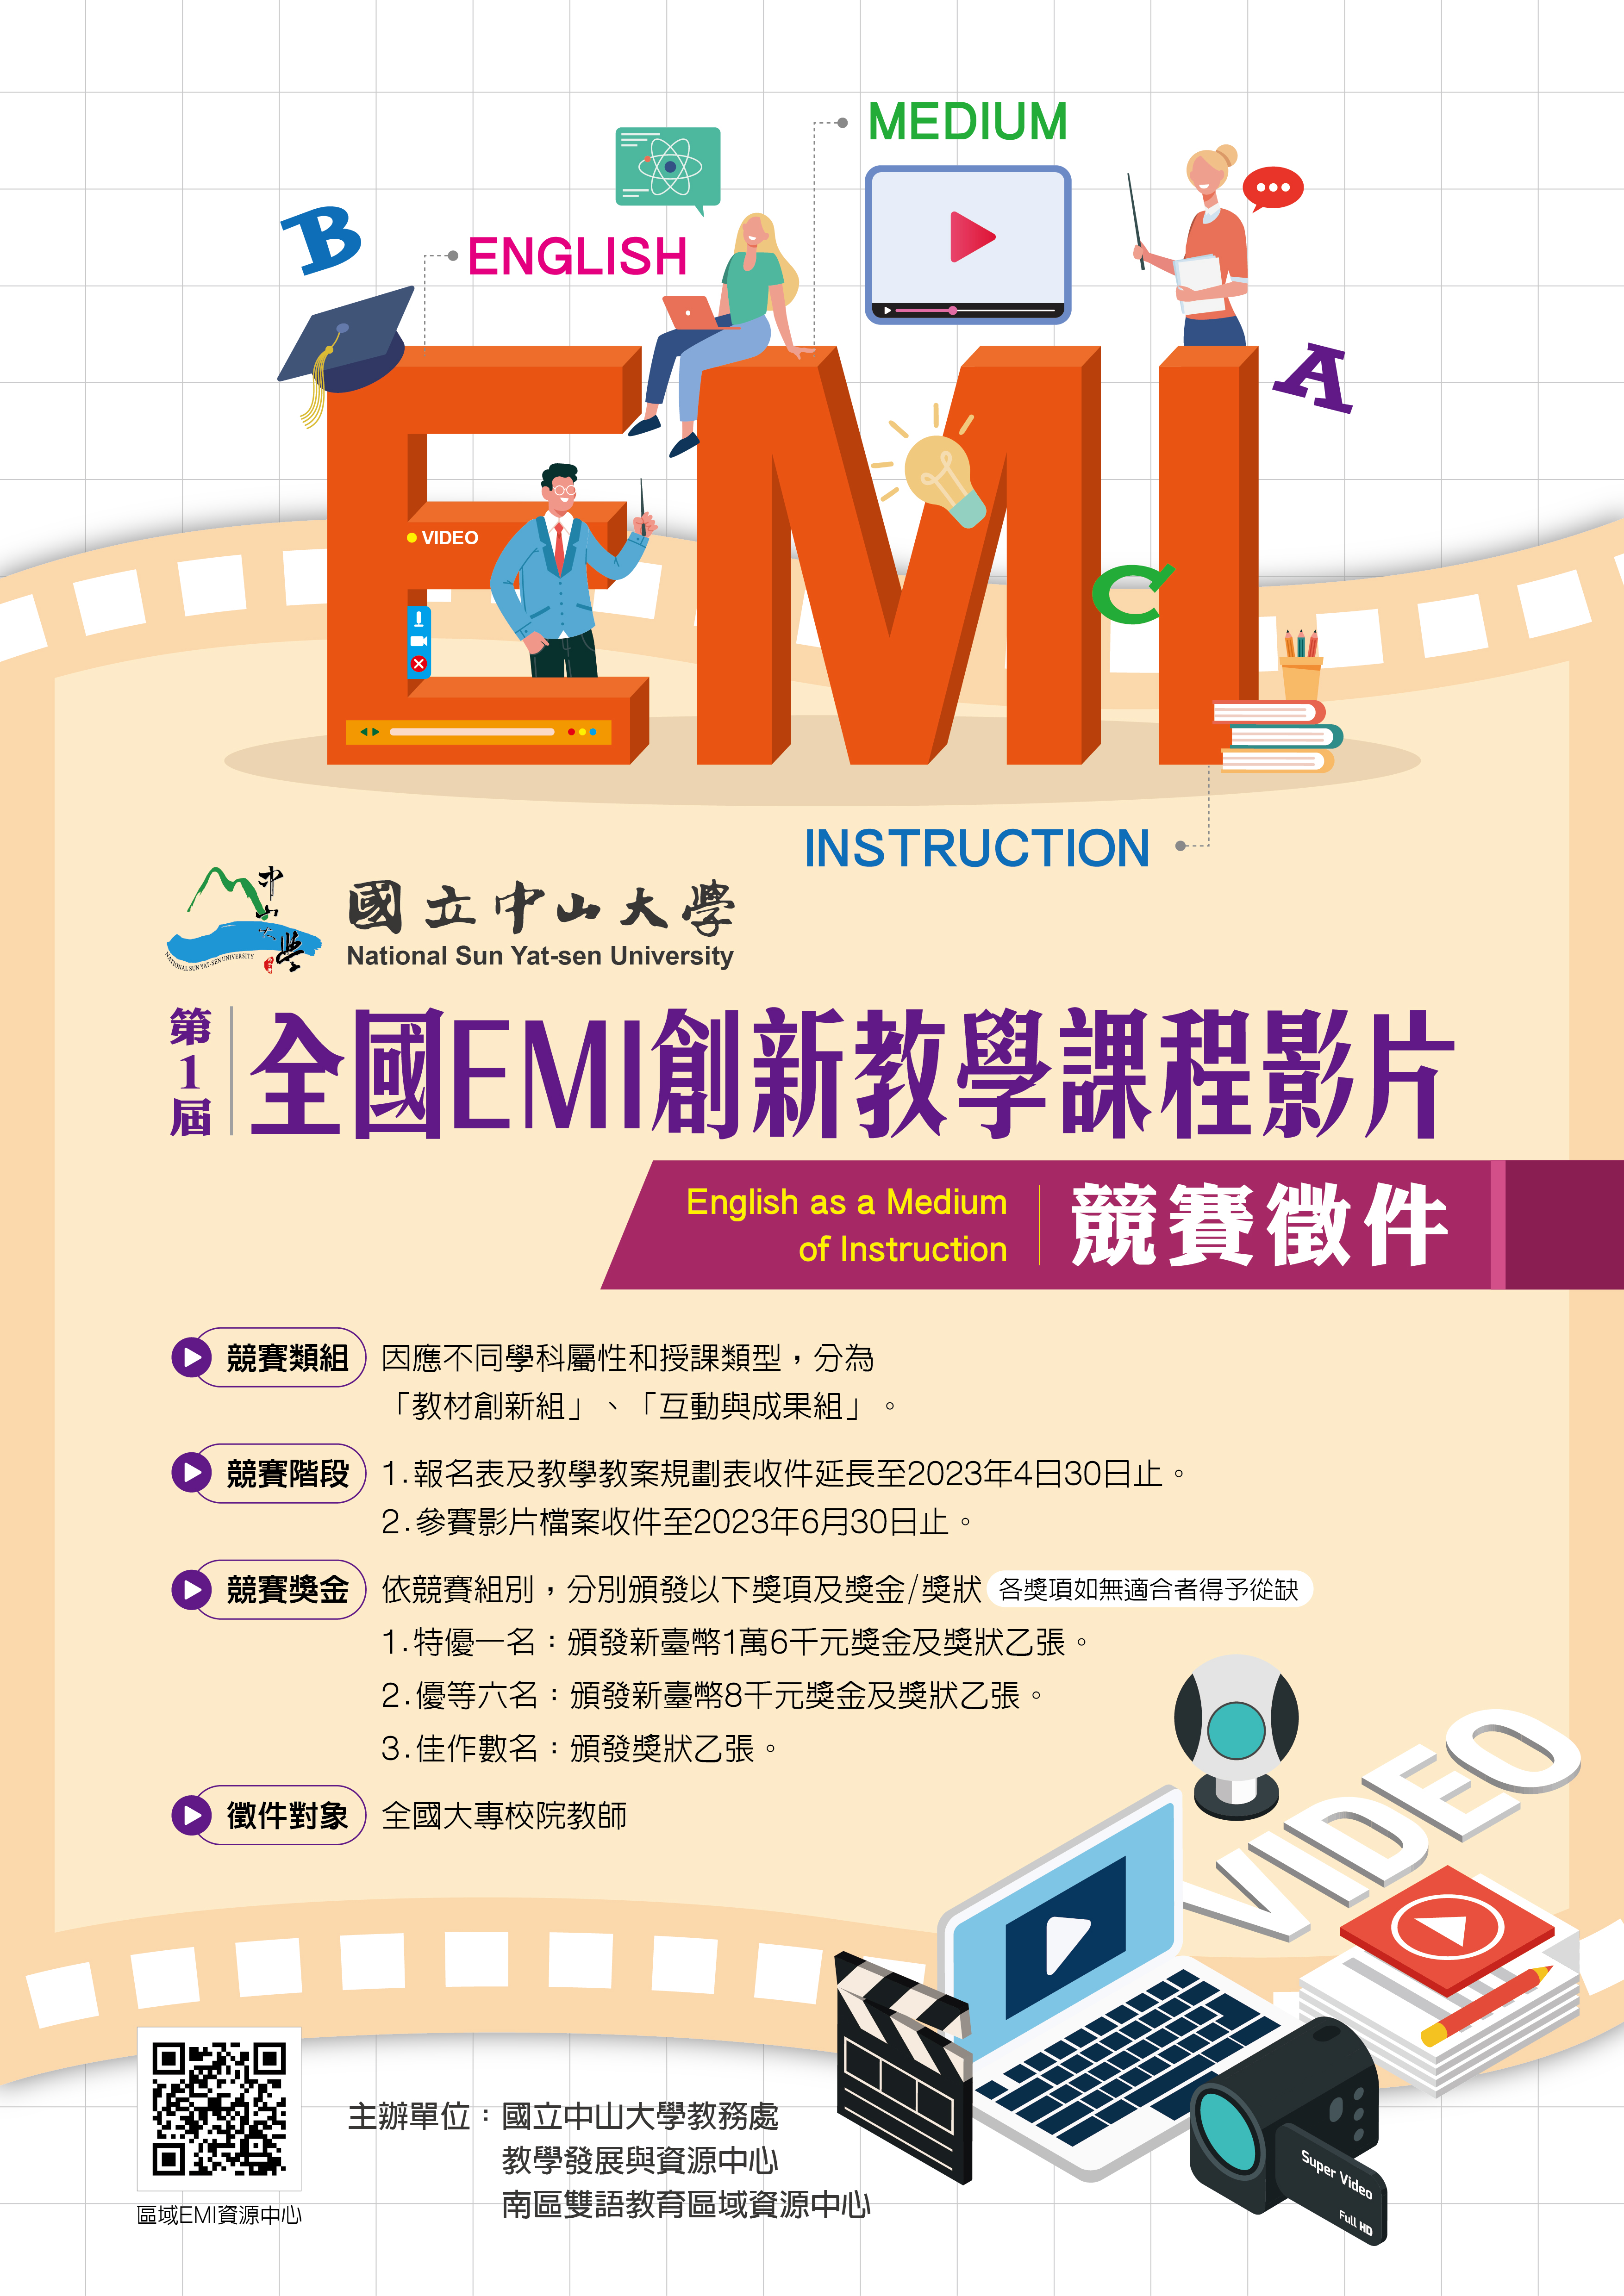 國立中山大學第一屆全國EMI創新教學課程影片競賽.jpg